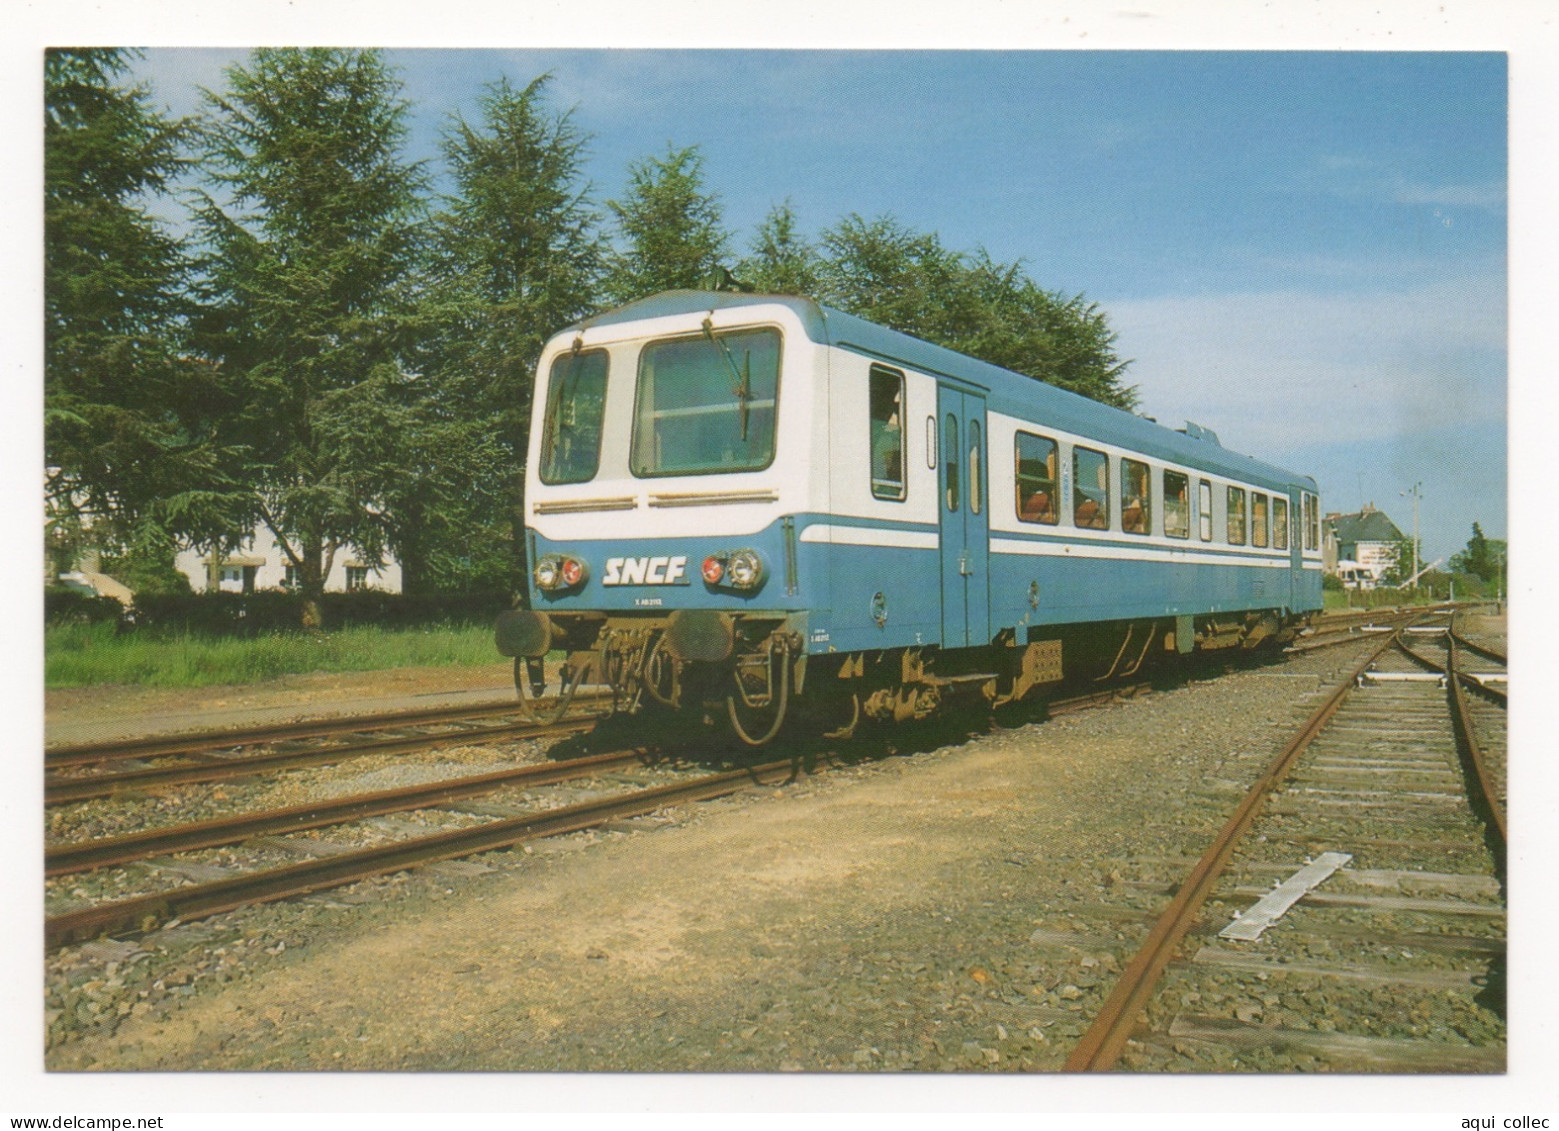 RETIERS (35) LIGNE DE RENNES À NANTES PAR CHÂTEAUBRIANT - AUTORAIL X 2100 MANOEUVRANT EN GARE - LE 26 MAI 1986 - Trenes